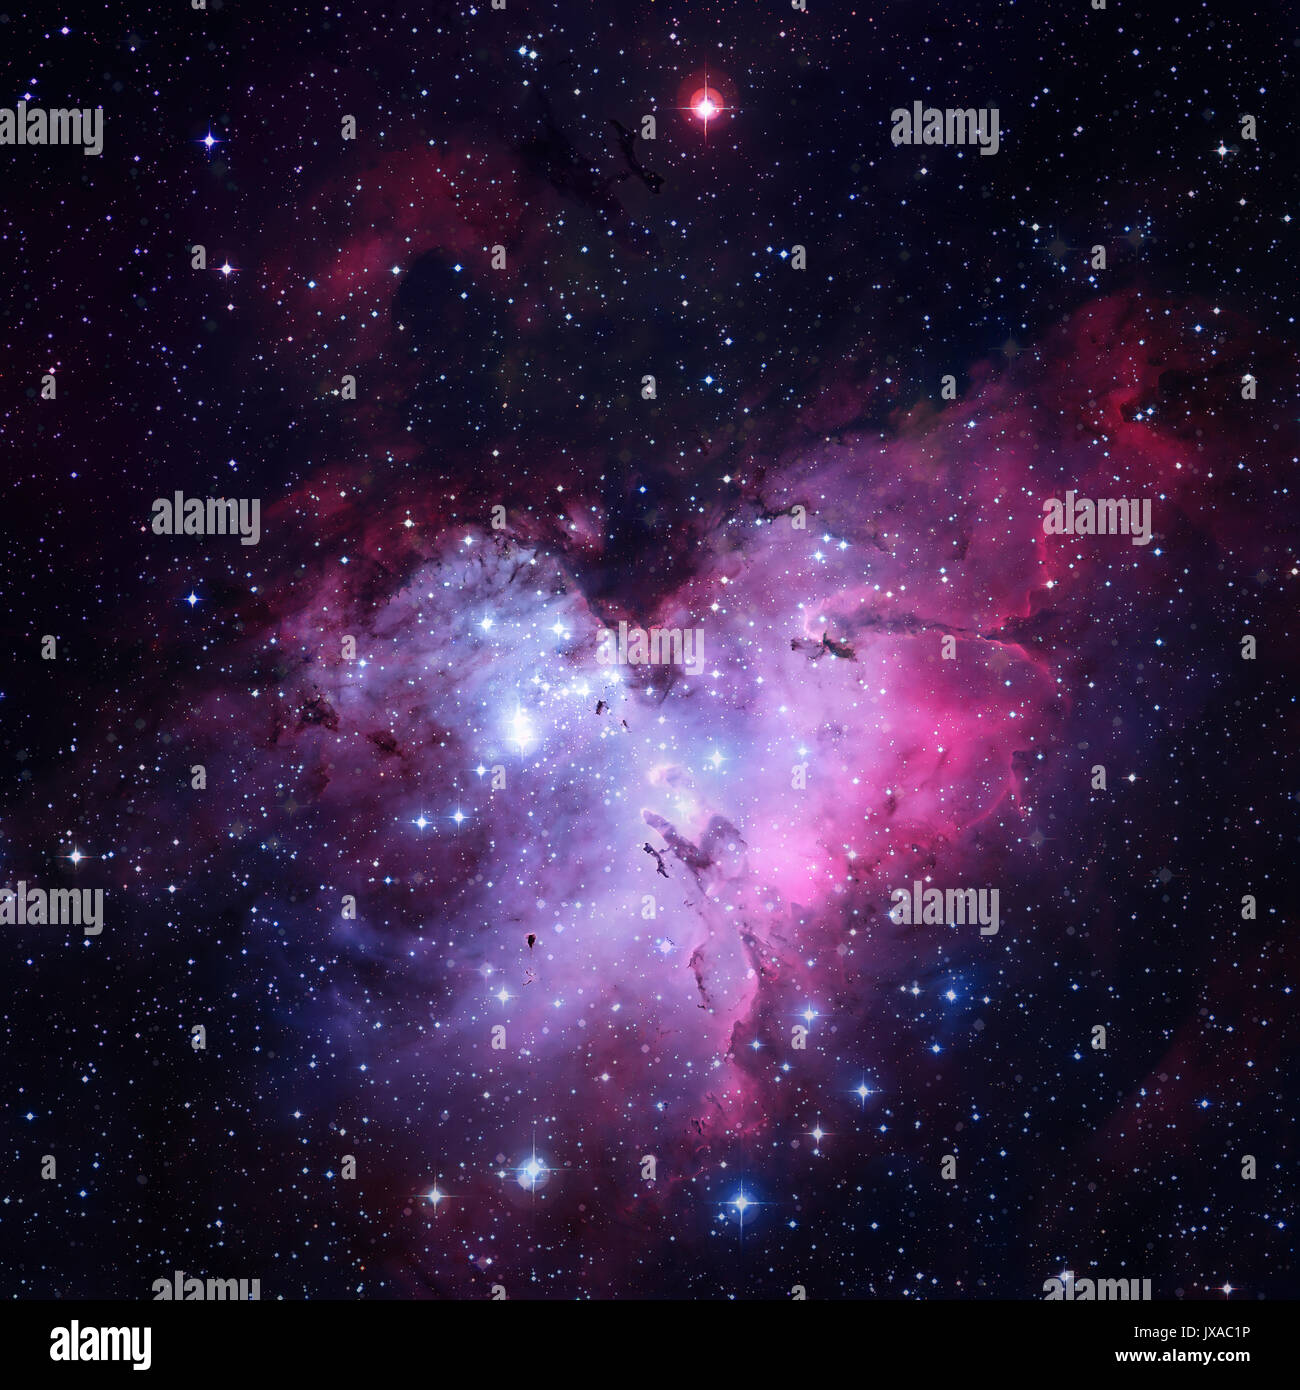 La Nébuleuse de l'Aigle, ou Messier 16. Au centre, le soi-disant piliers de la création peut être vu. Éléments de cette image fournie par la NASA. Banque D'Images